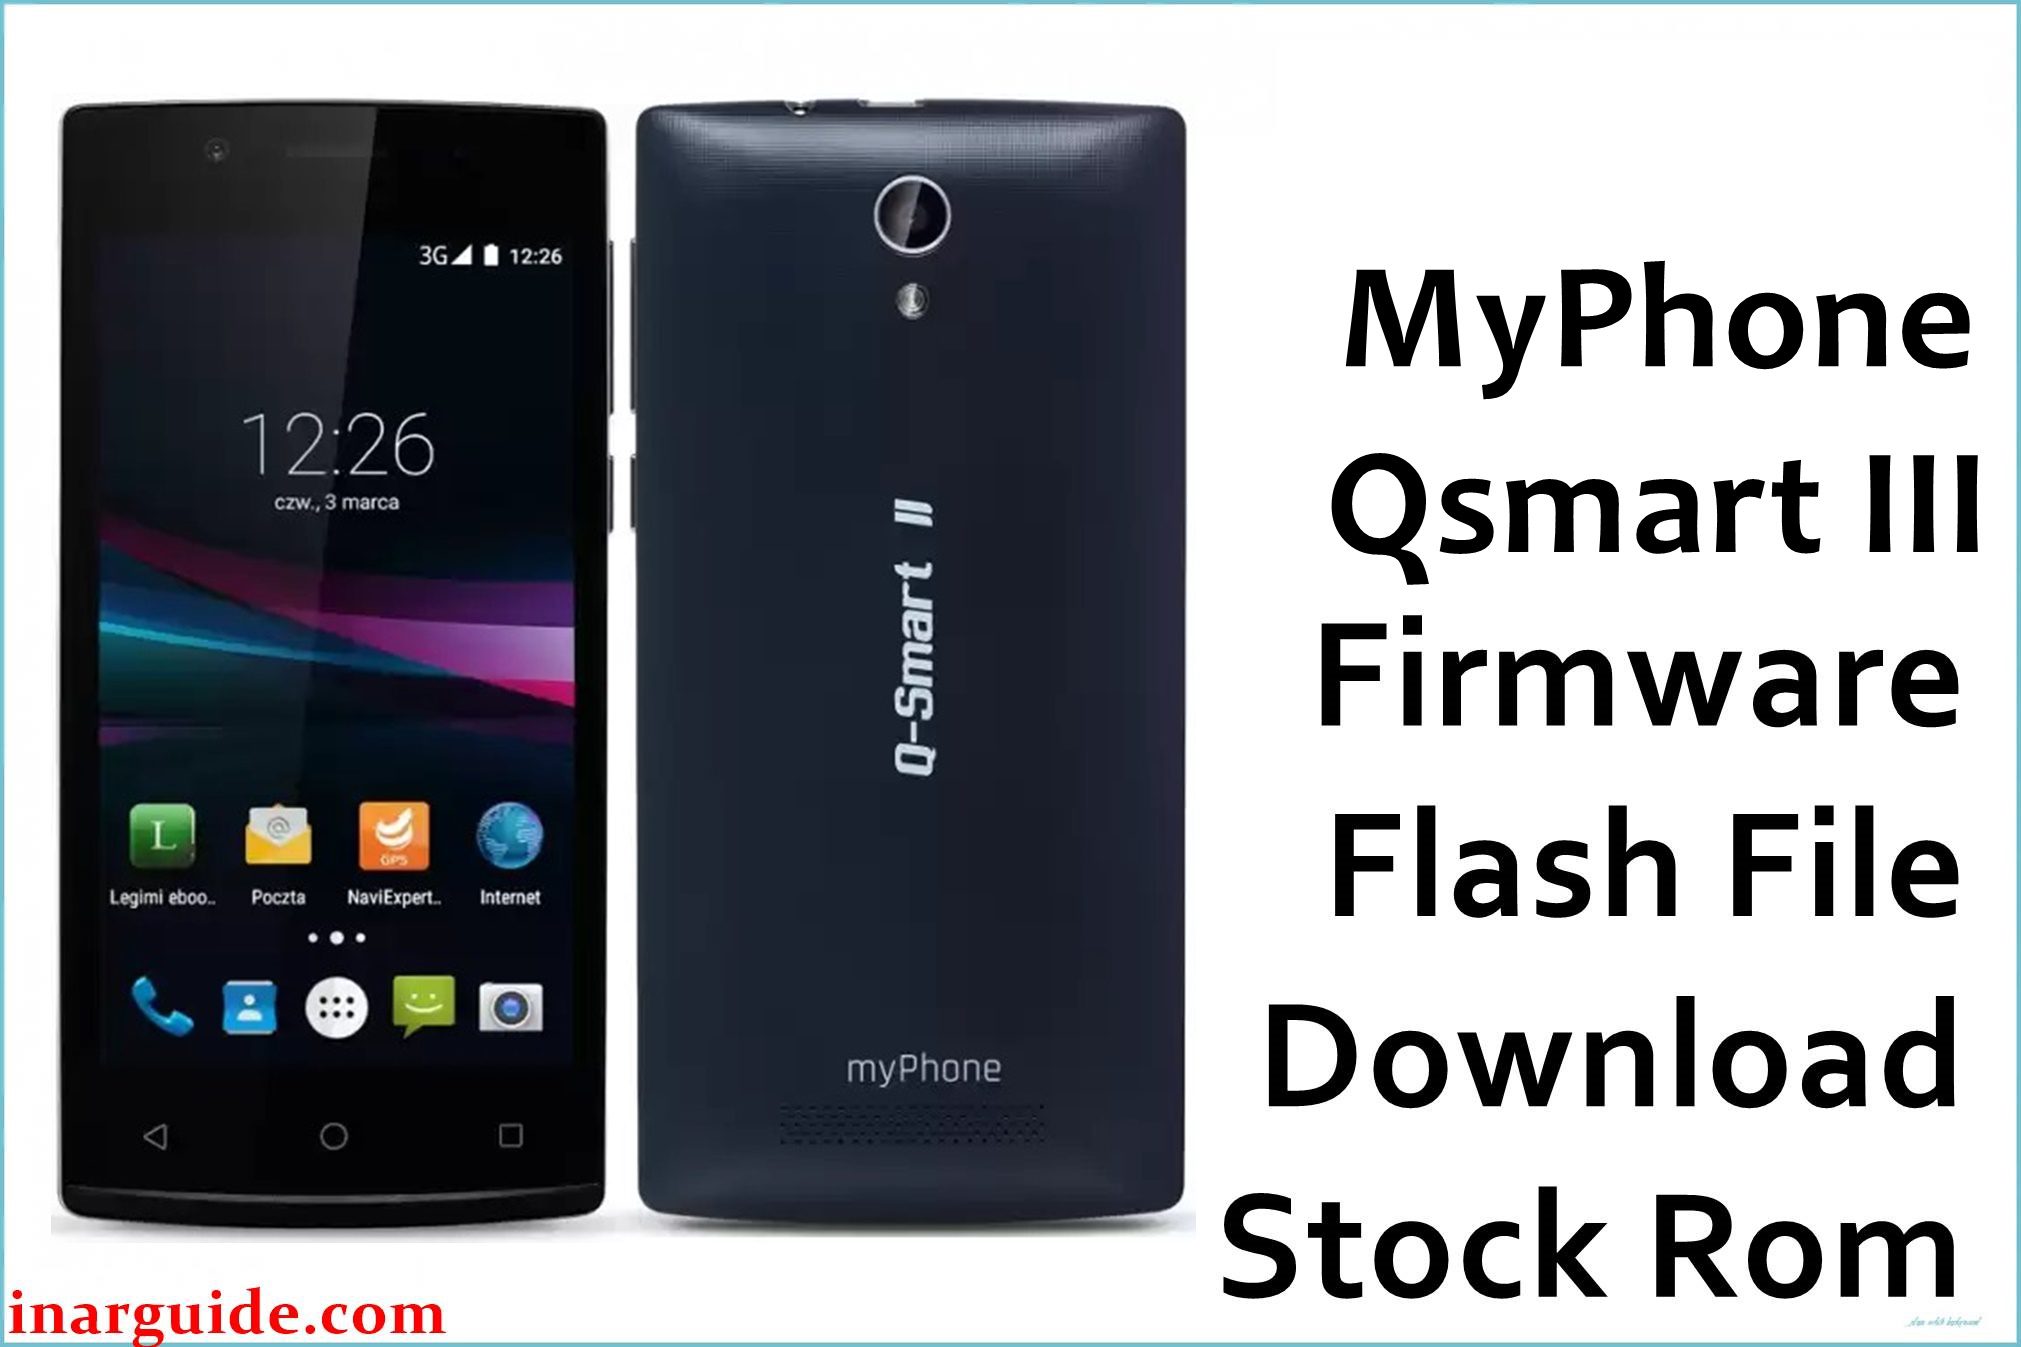 MyPhone Qsmart III